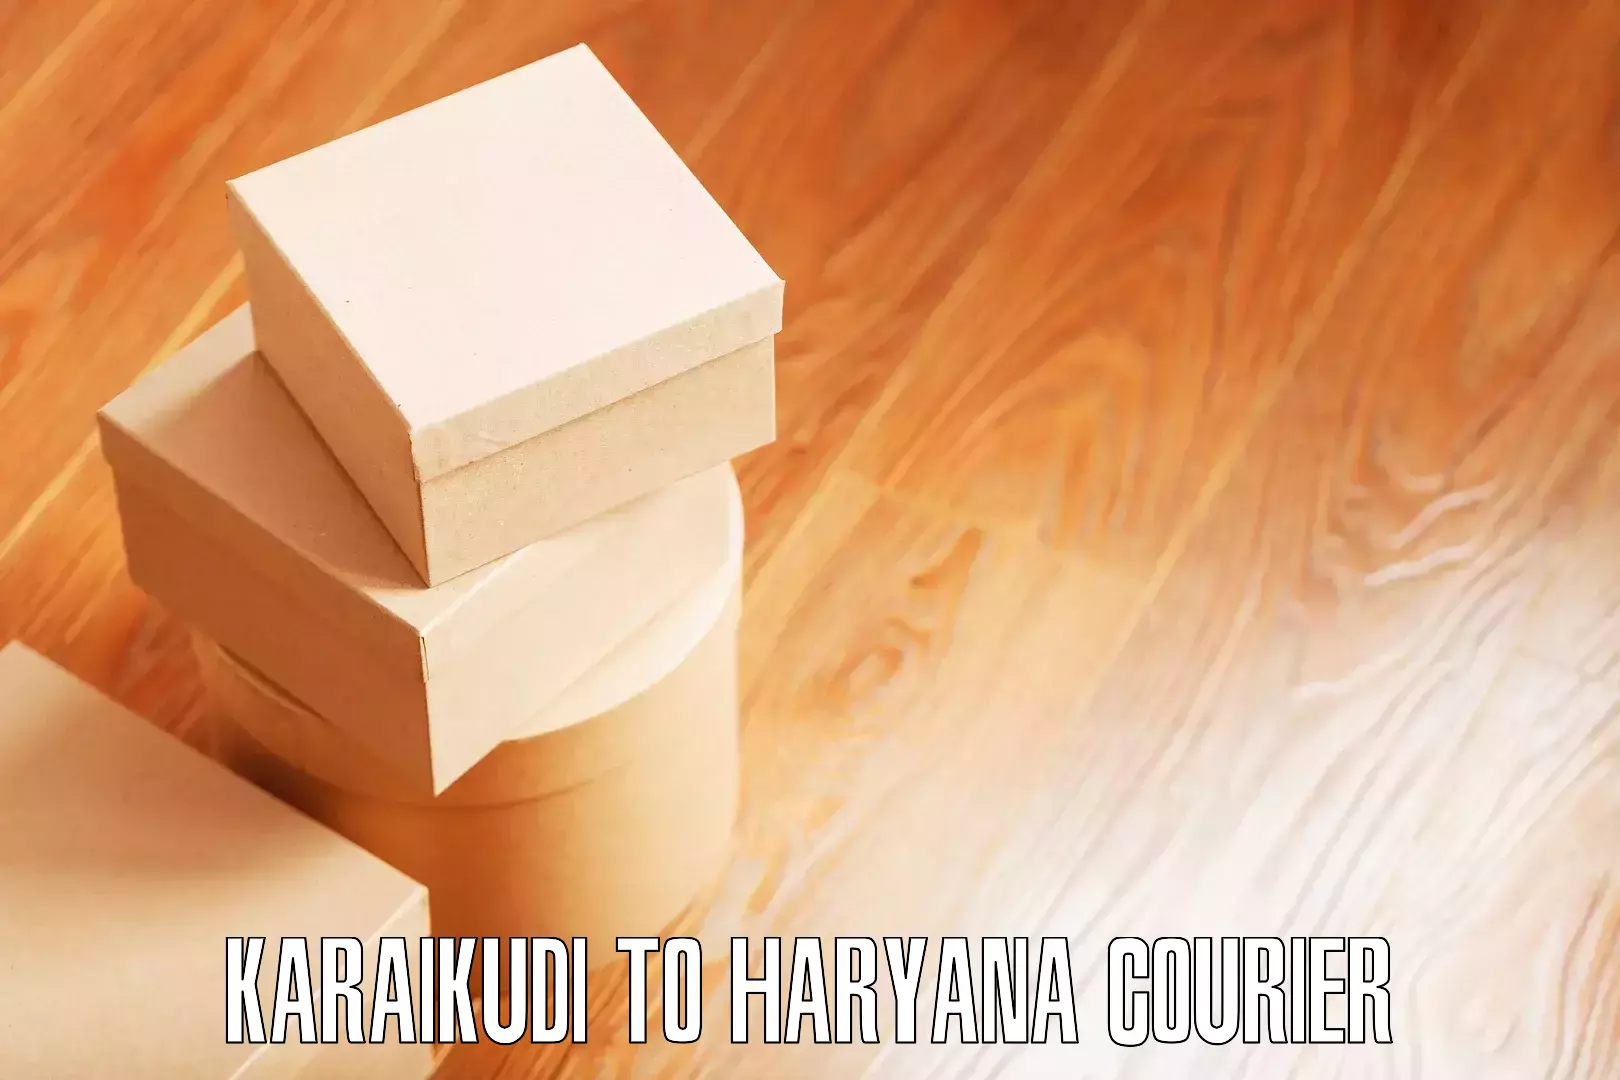 Furniture transport service Karaikudi to NCR Haryana